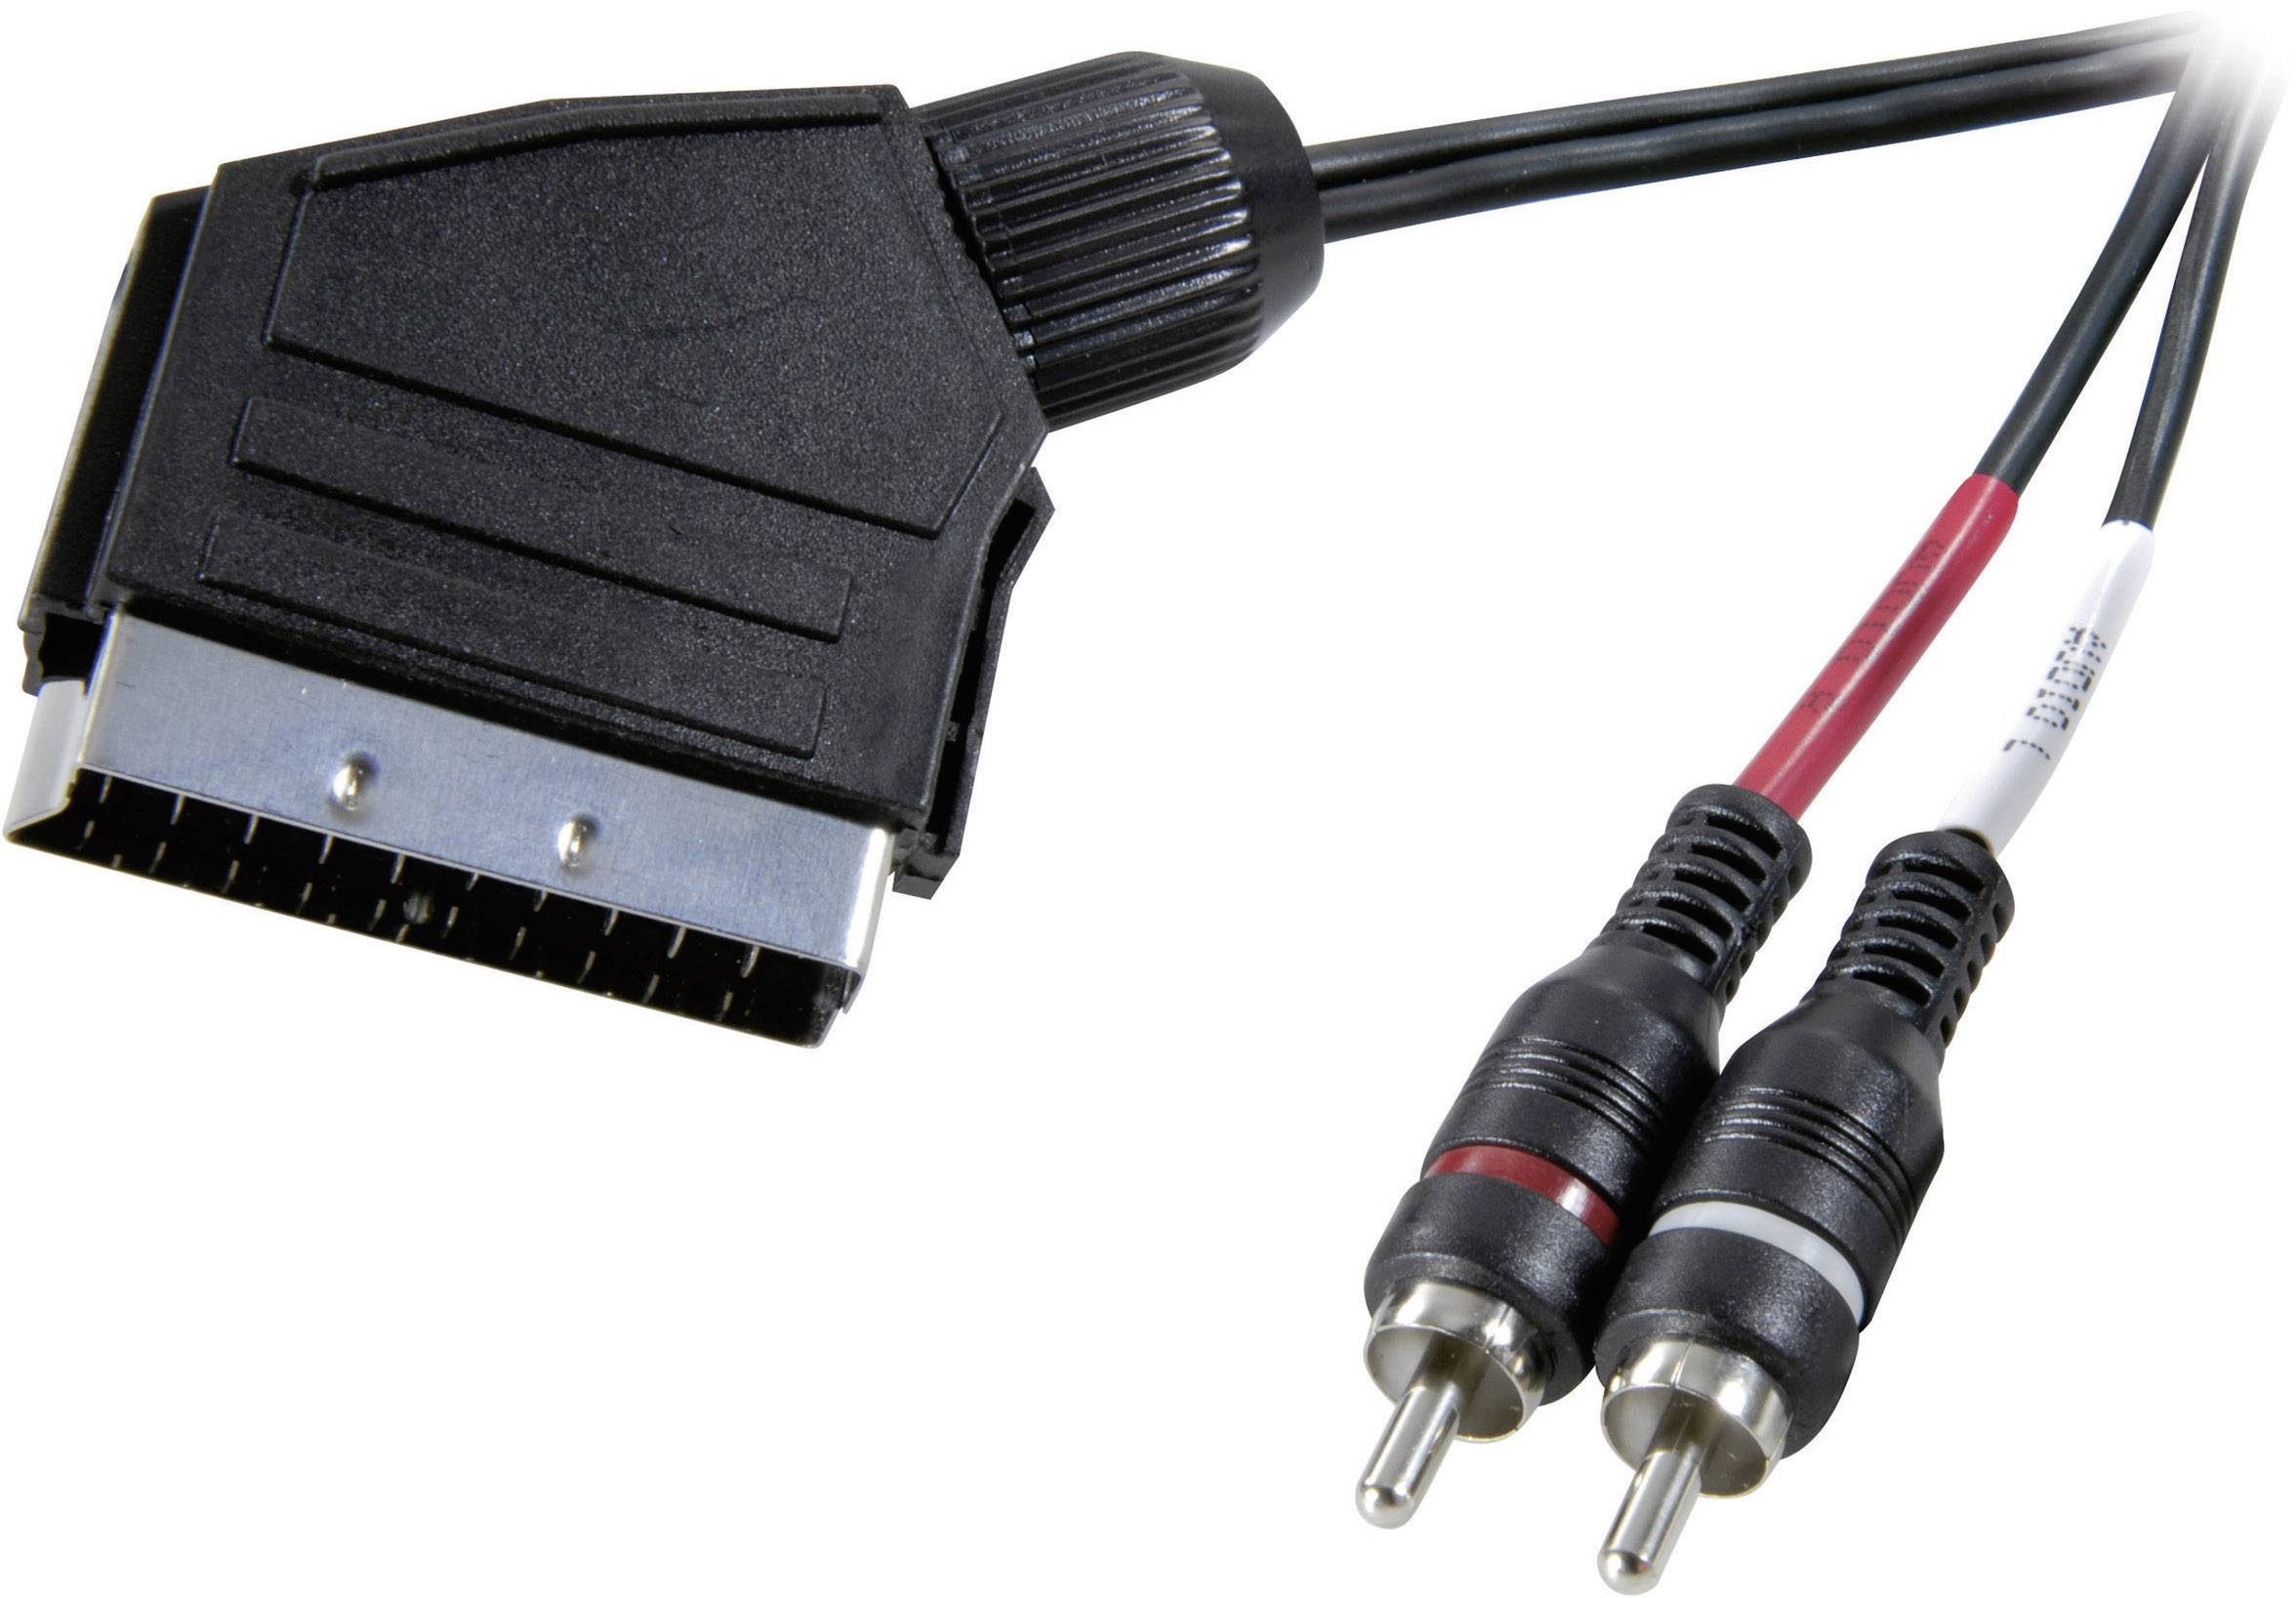 SPEAKA PROFESSIONAL SCART / Cinch Audio Anschlusskabel [1x SCART-Stecker - 2x Cinch-Stecker]